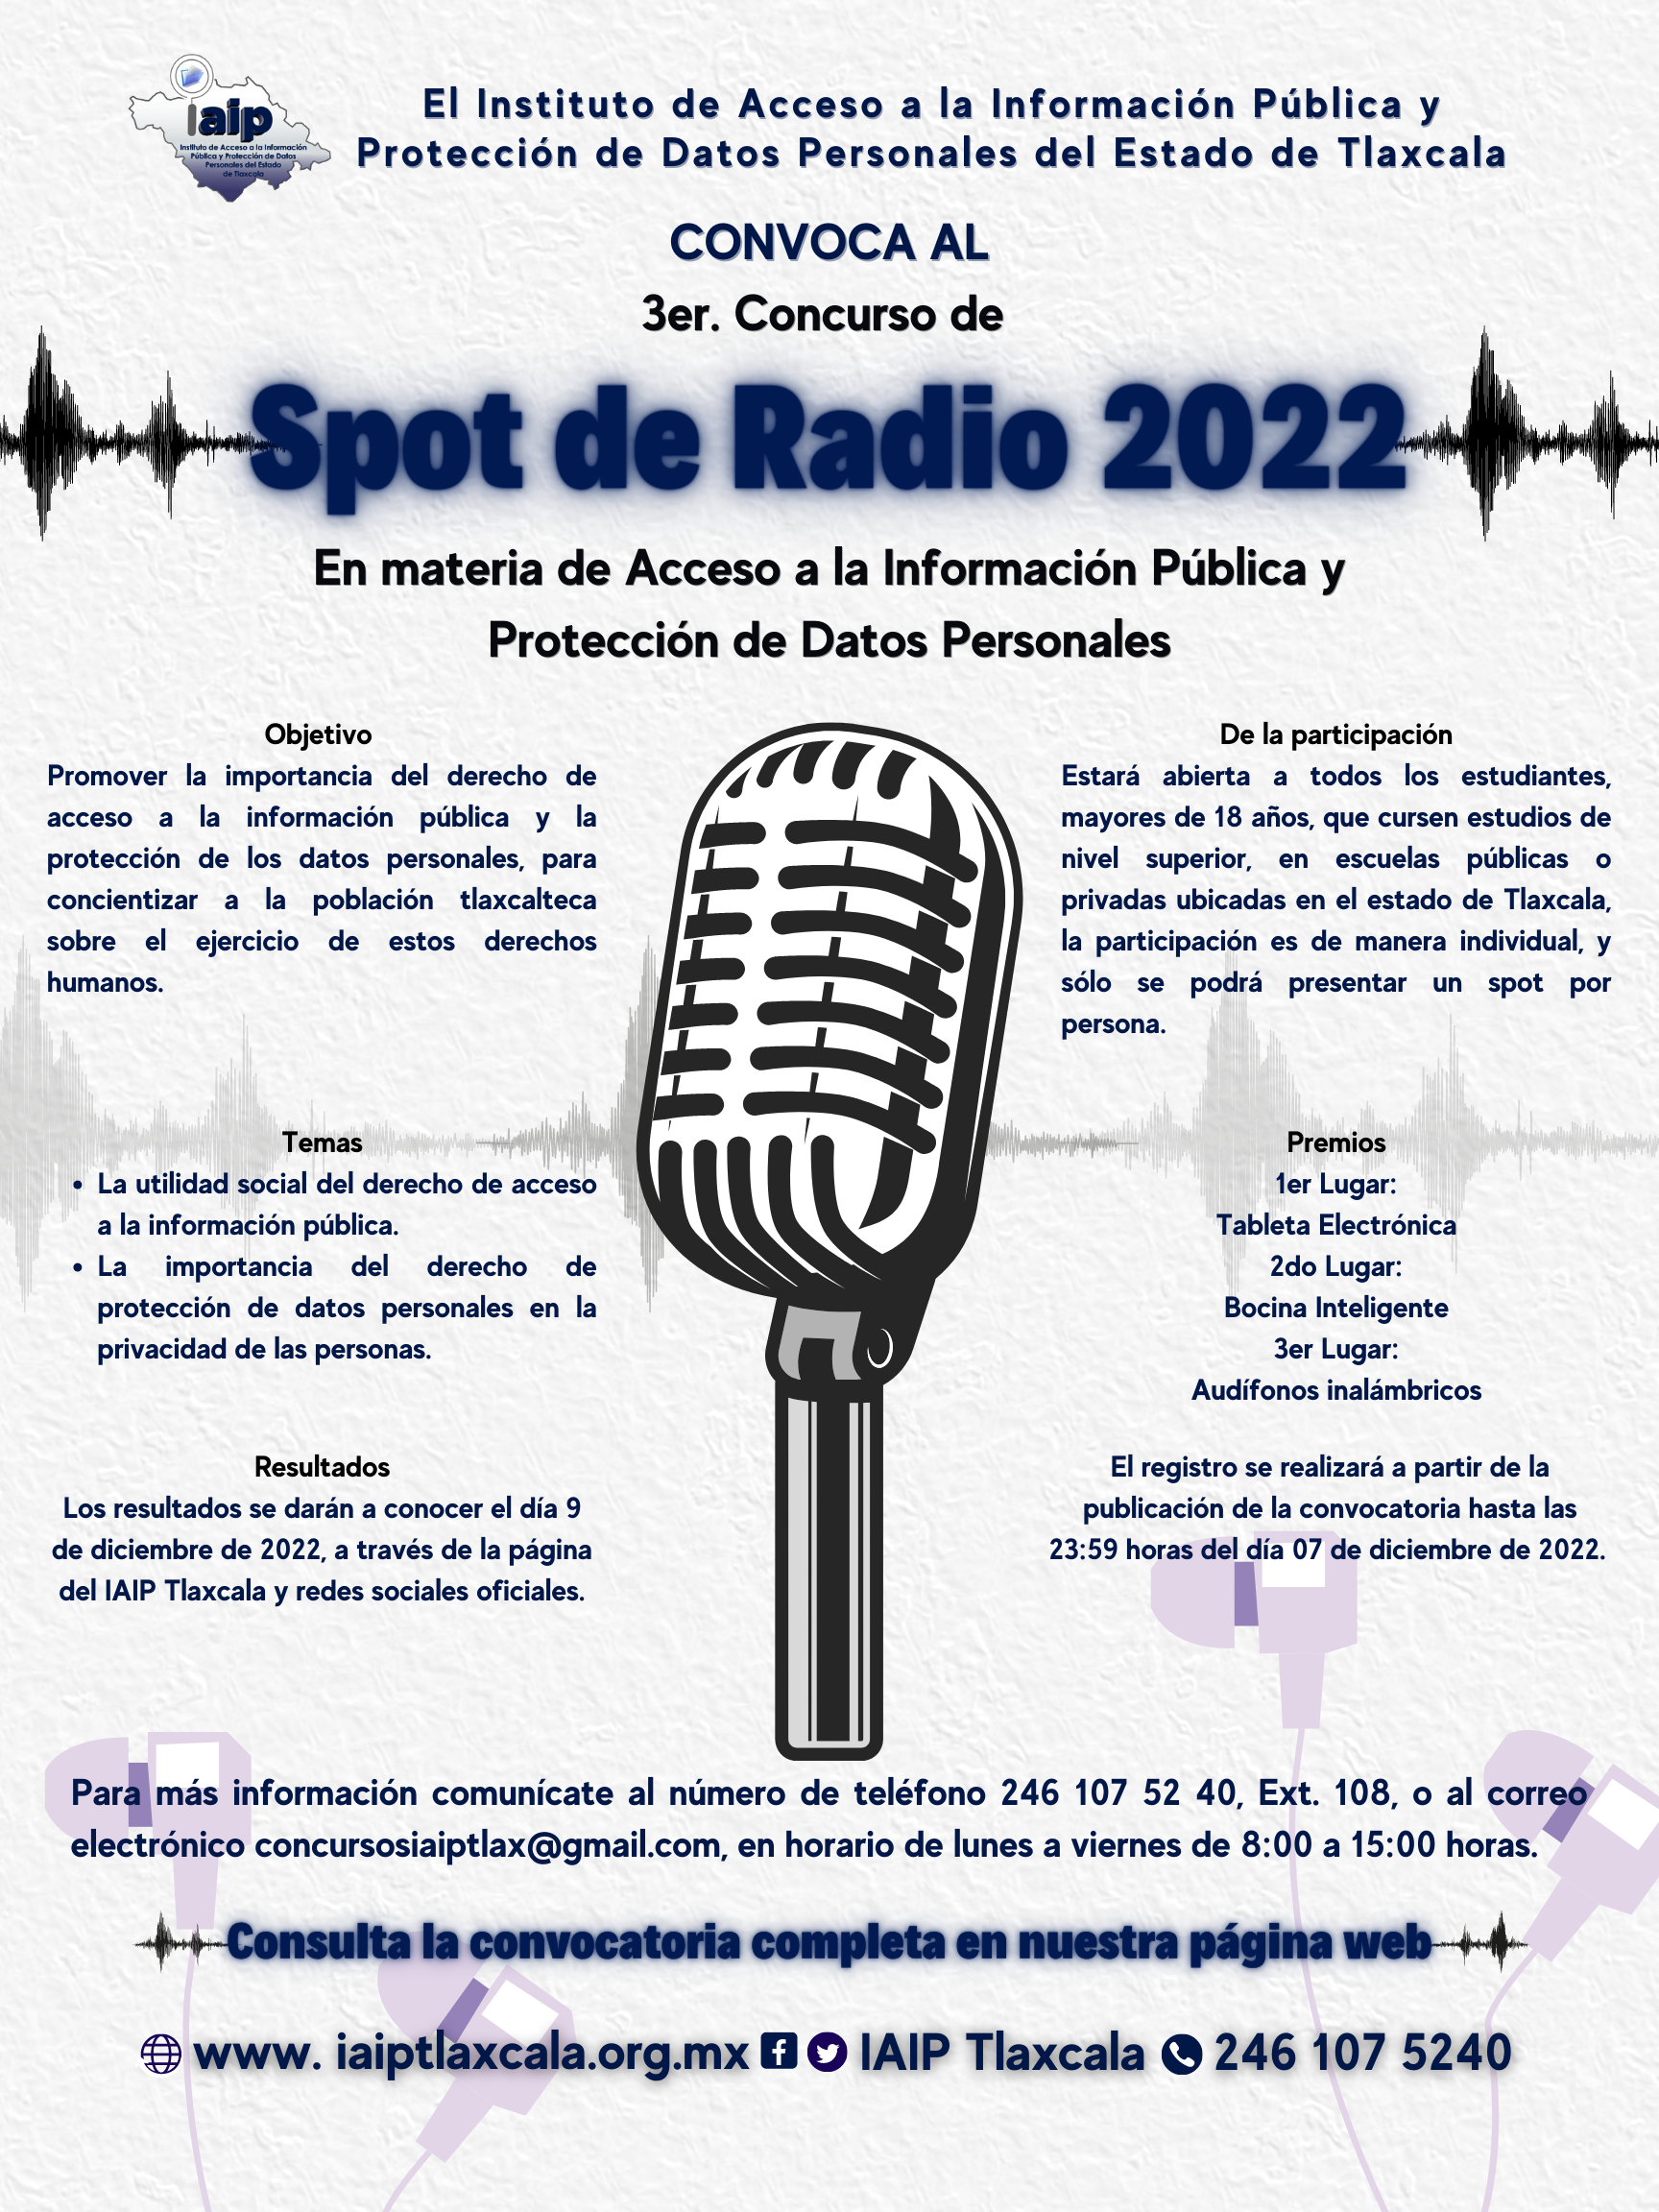 3er. Concurso de Spot de Radio 2022